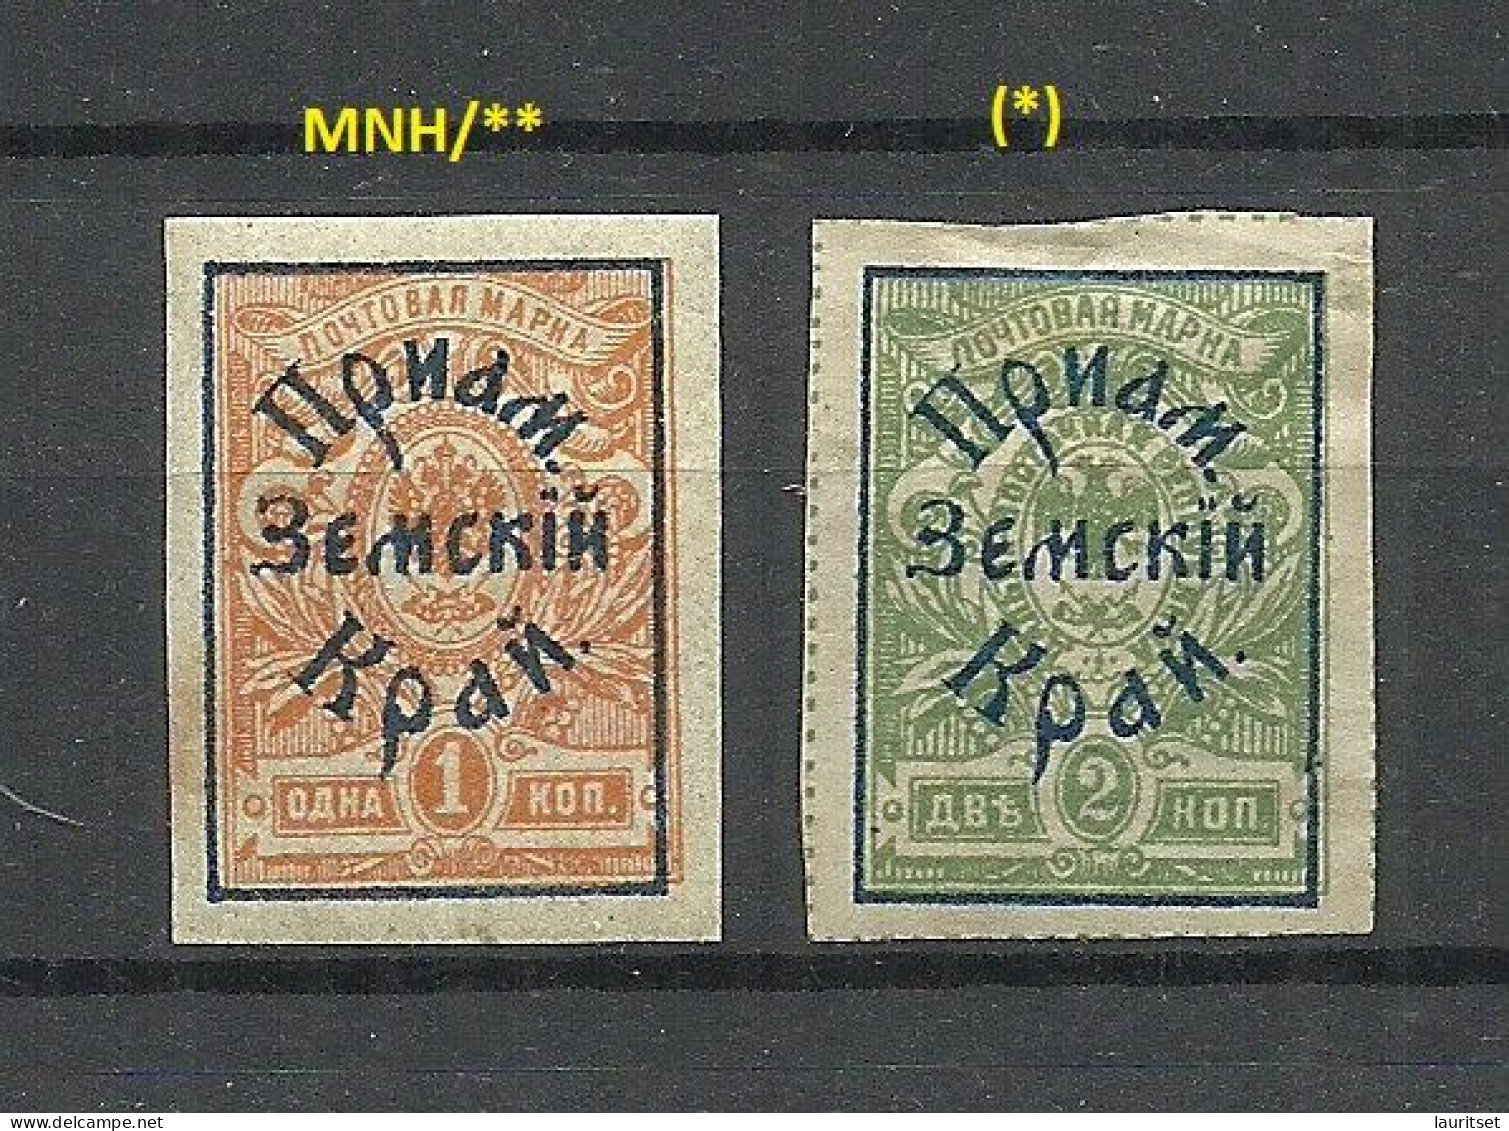 RUSSLAND RUSSIA 1922 Priamur Far East 4 Values From Michel 31 - 32 B MNH/(*) - Siberië En Het Verre Oosten